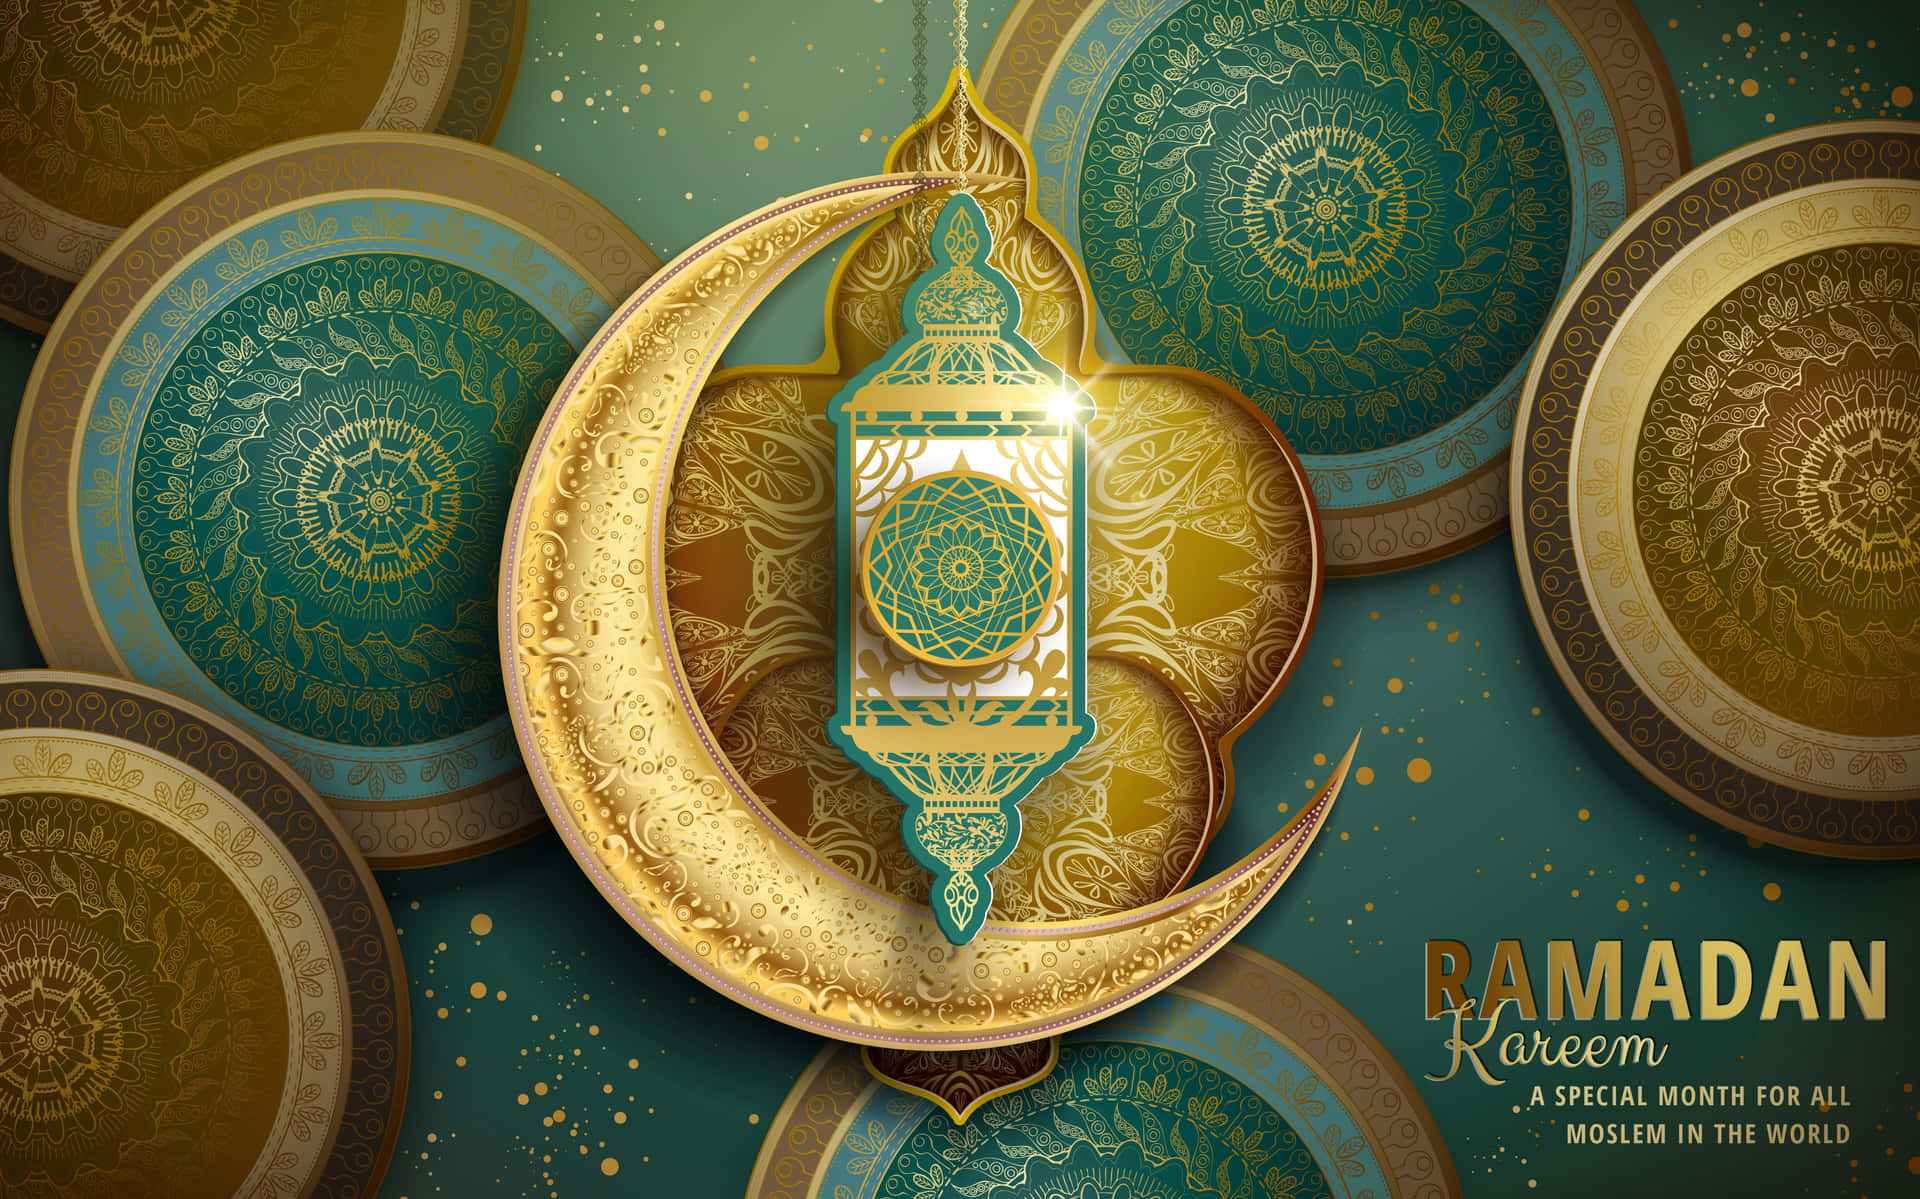 Imagende Ramadán En Tonos Dorados Y Verdes